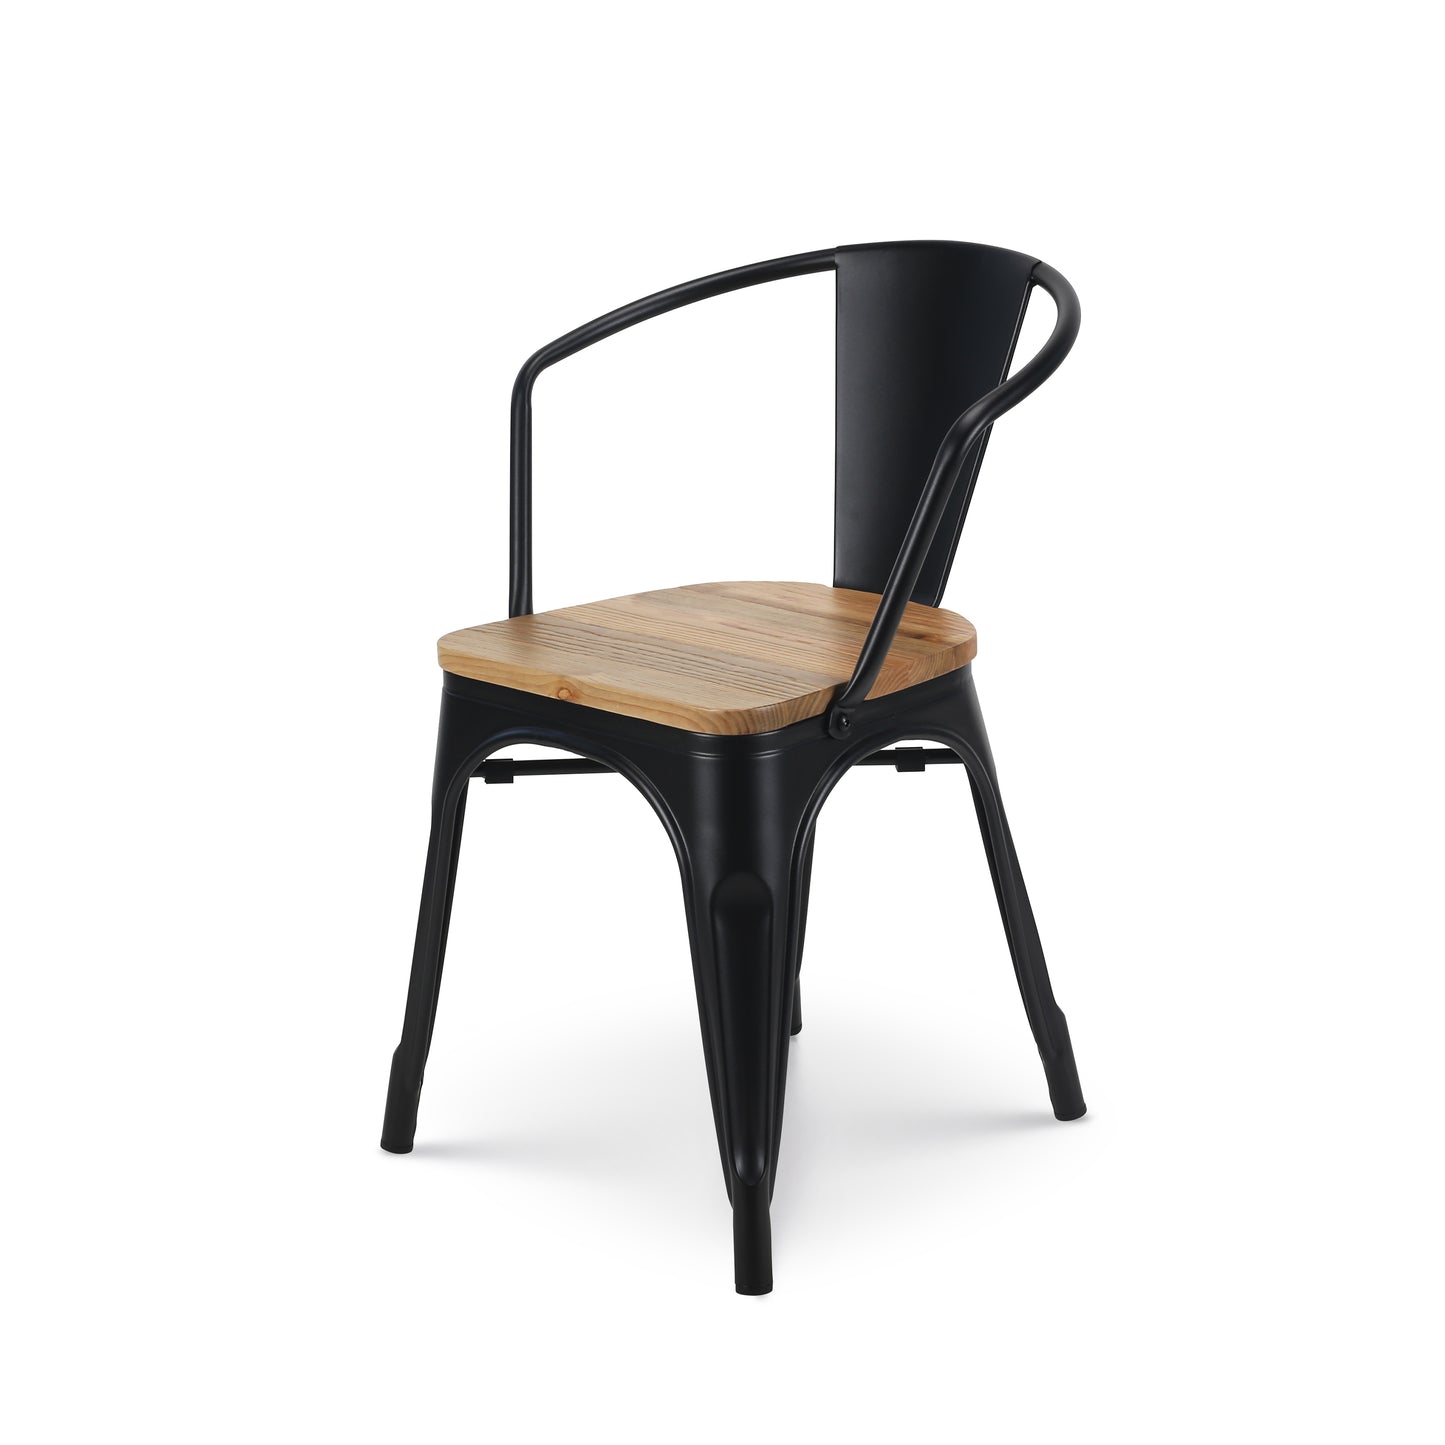 Chaise en métal noir mat style industriel avec assise en bois clair - Avec accoudoirs